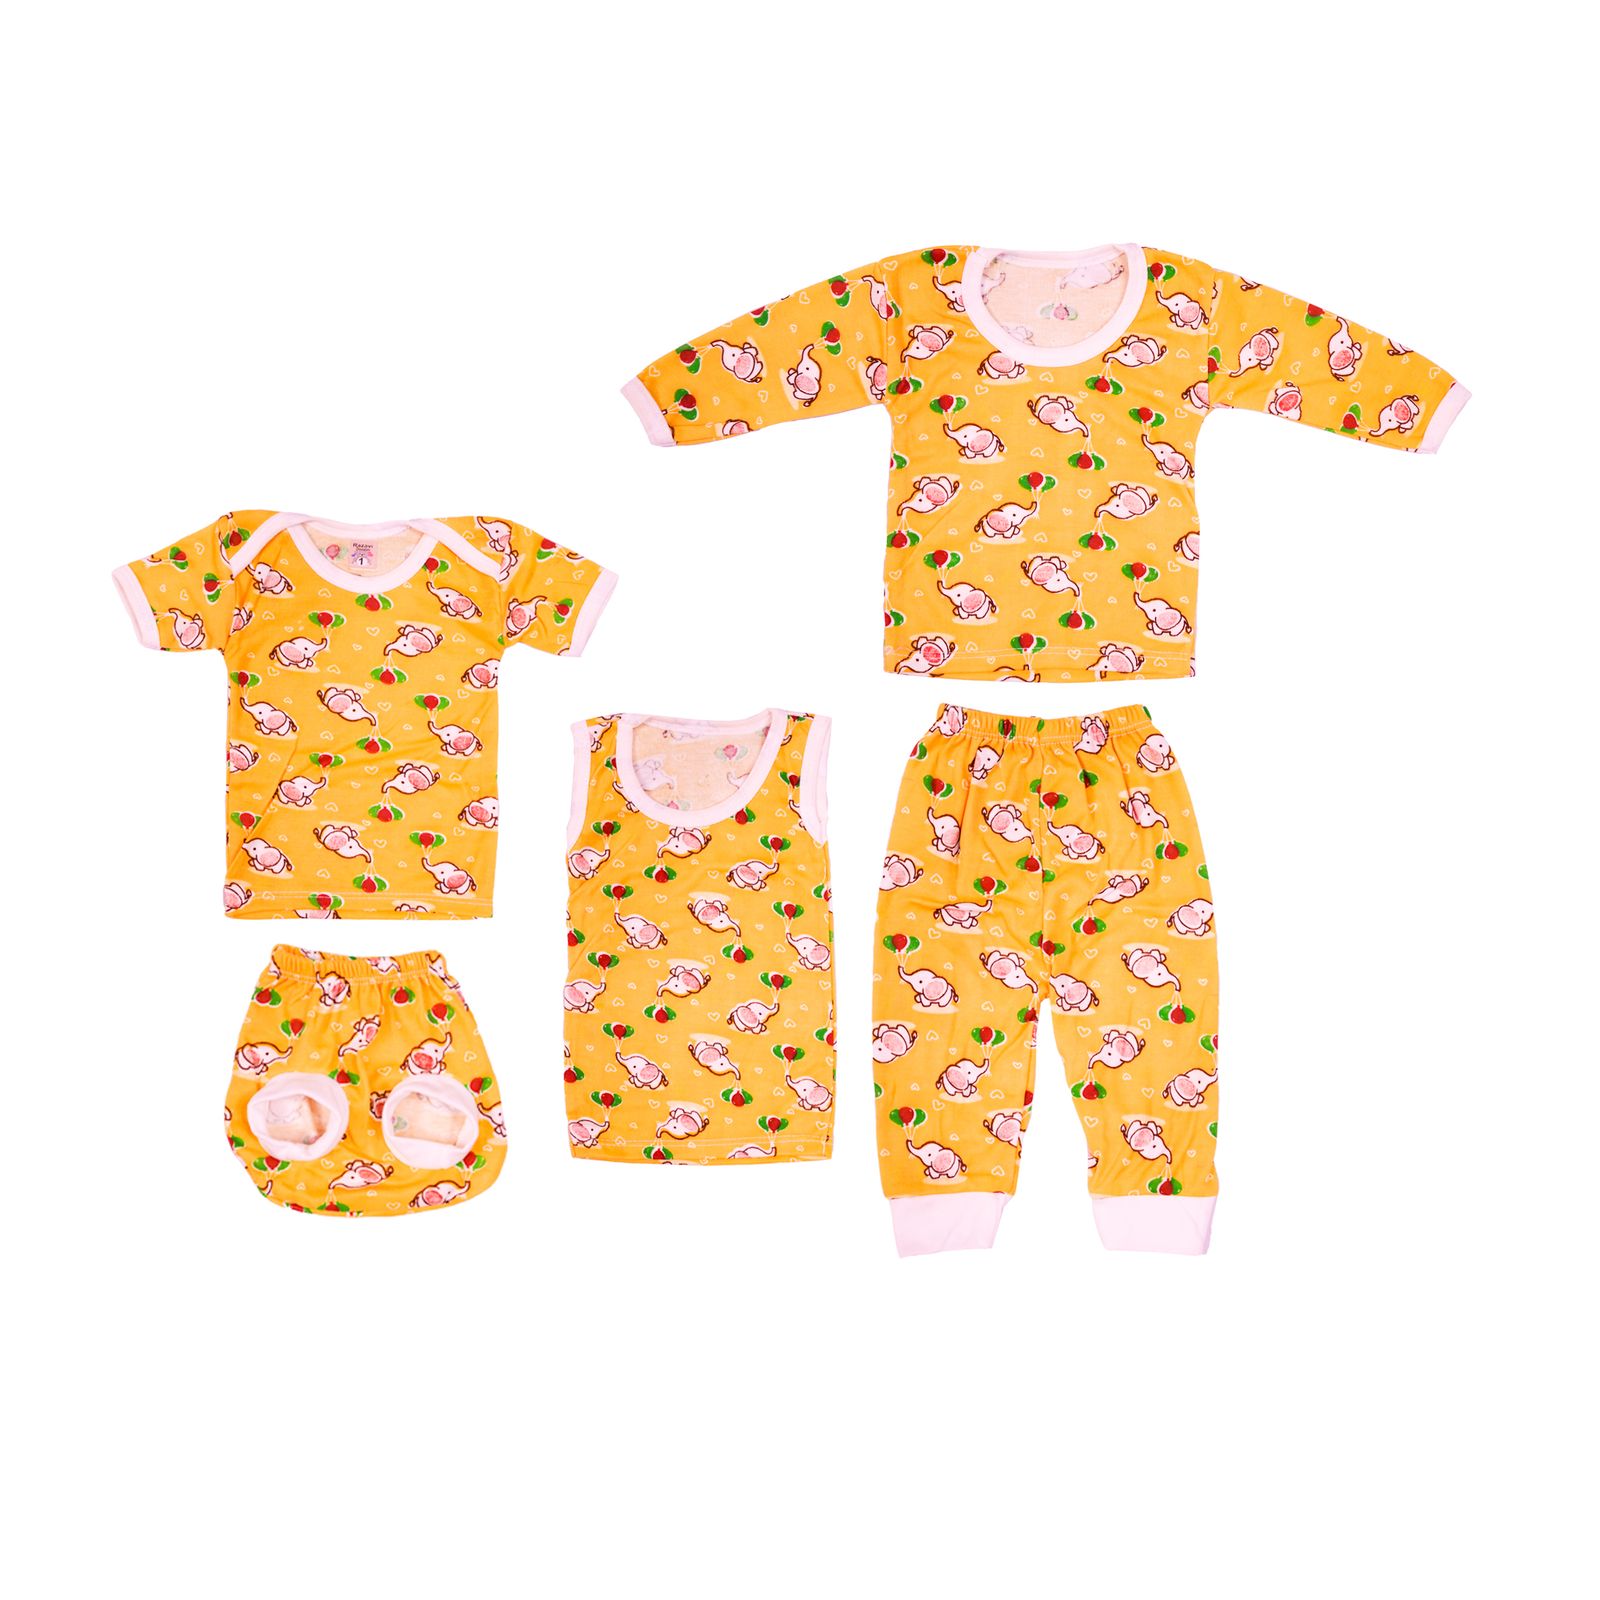 ست 5 تکه لباس نوزادی مدل فیل بادکنکی کد 3 رنگ زرد -  - 2